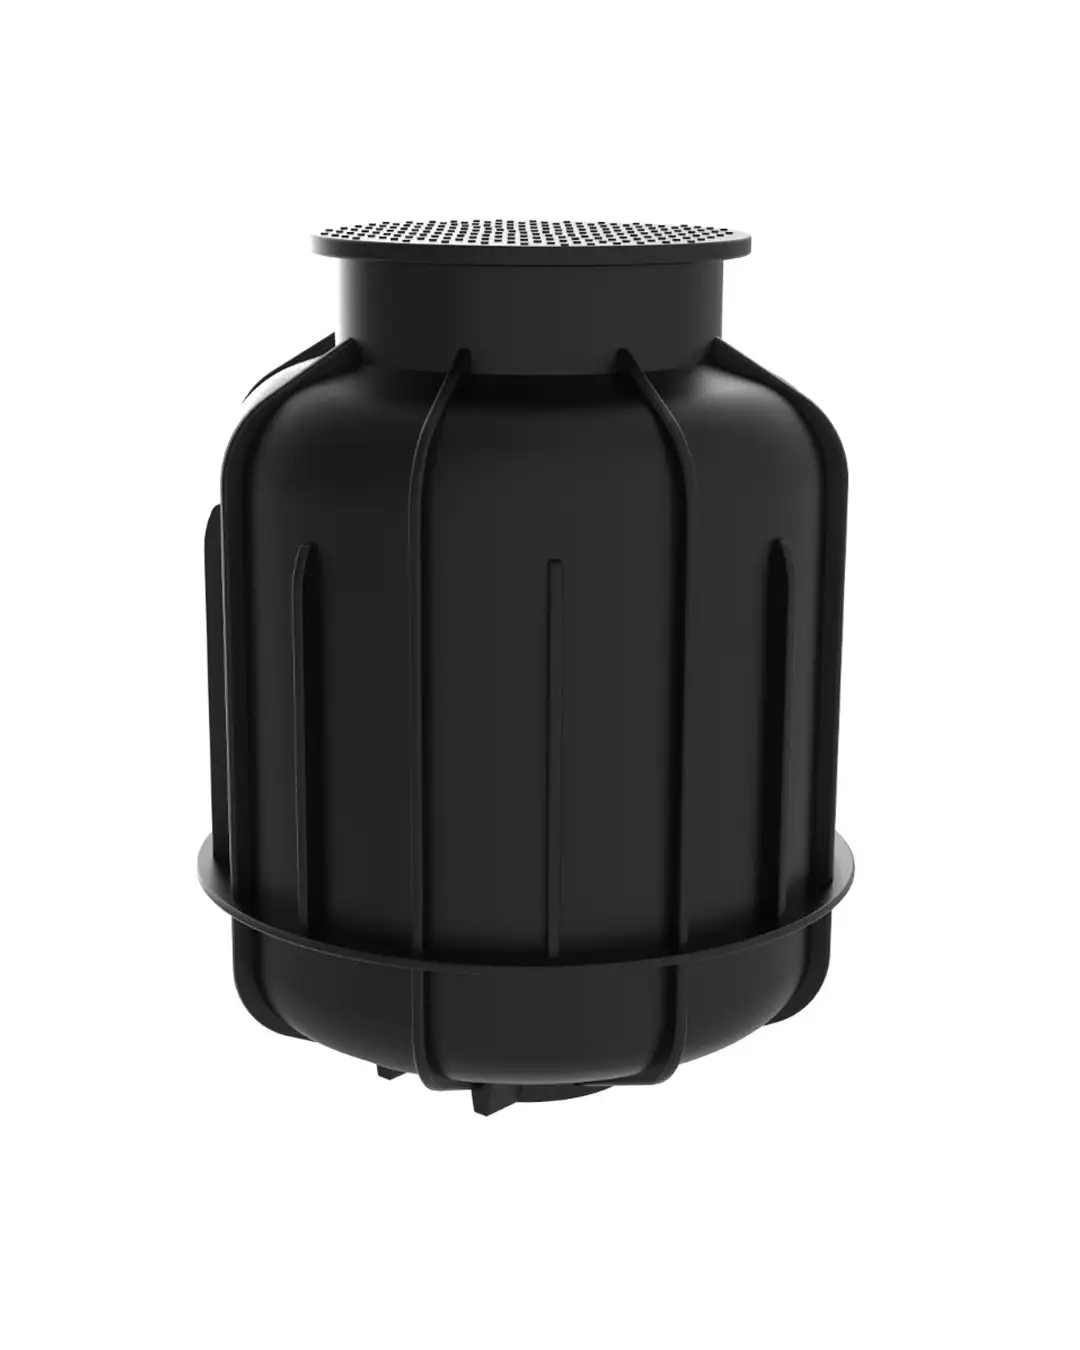 RK0000200002 Vízóra akna - Vízóra aknák, közvetlenűl a gyártótól, garantált minőség.